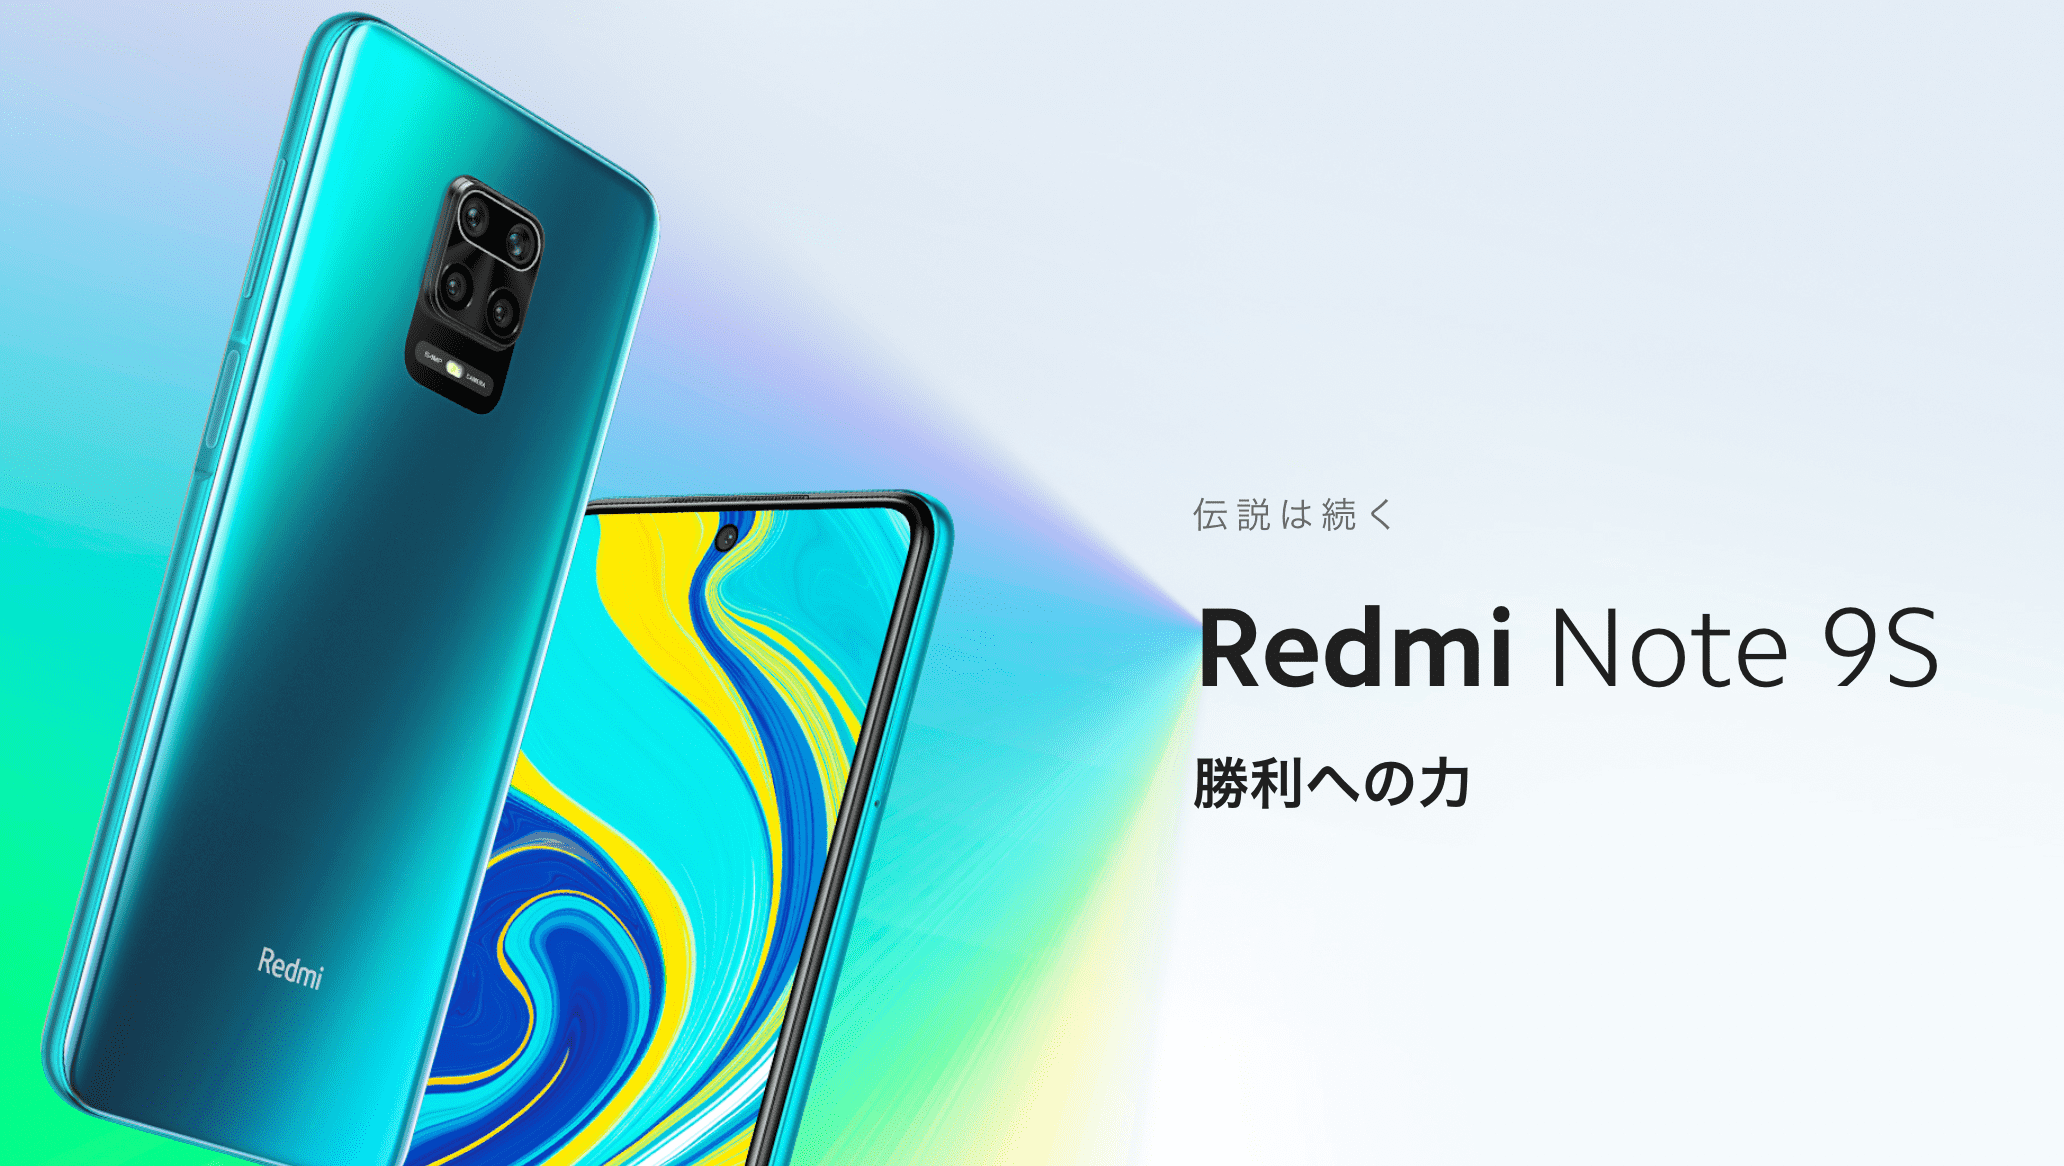 楽天モバイル対応端末 Redmi Note 9sはオススメできる 注意点などもまとめ すーちゃんモバイル比較 モバイルから広げる豊かな生活